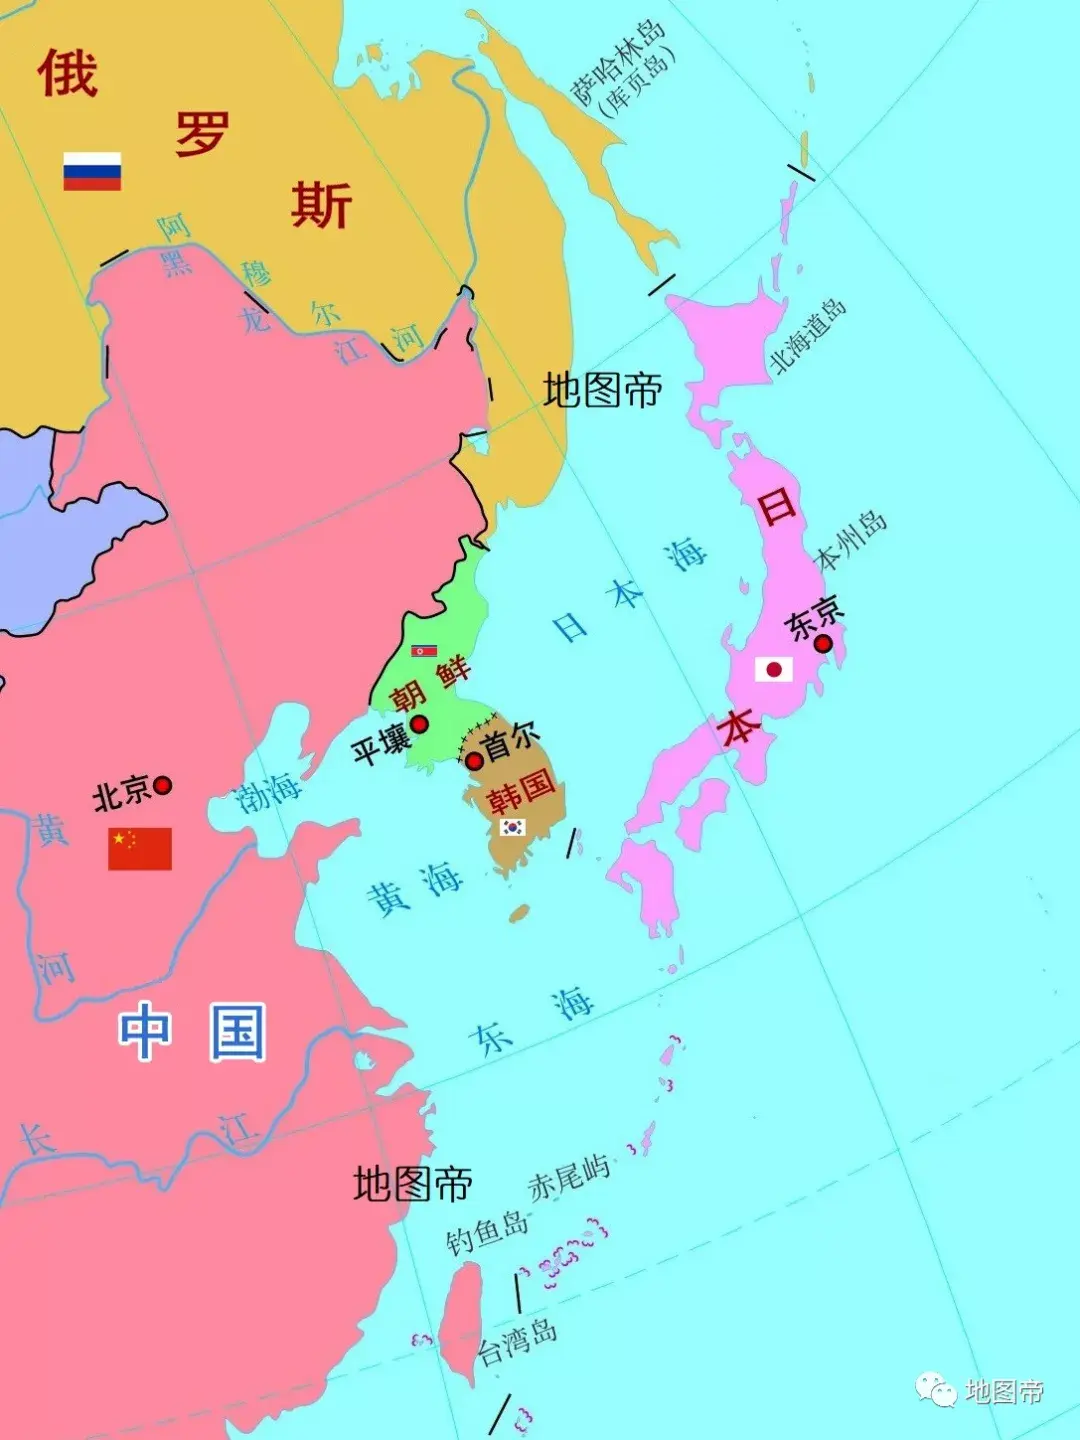 韩国地图中文版高清 - 韩国地图 - 地理教师网